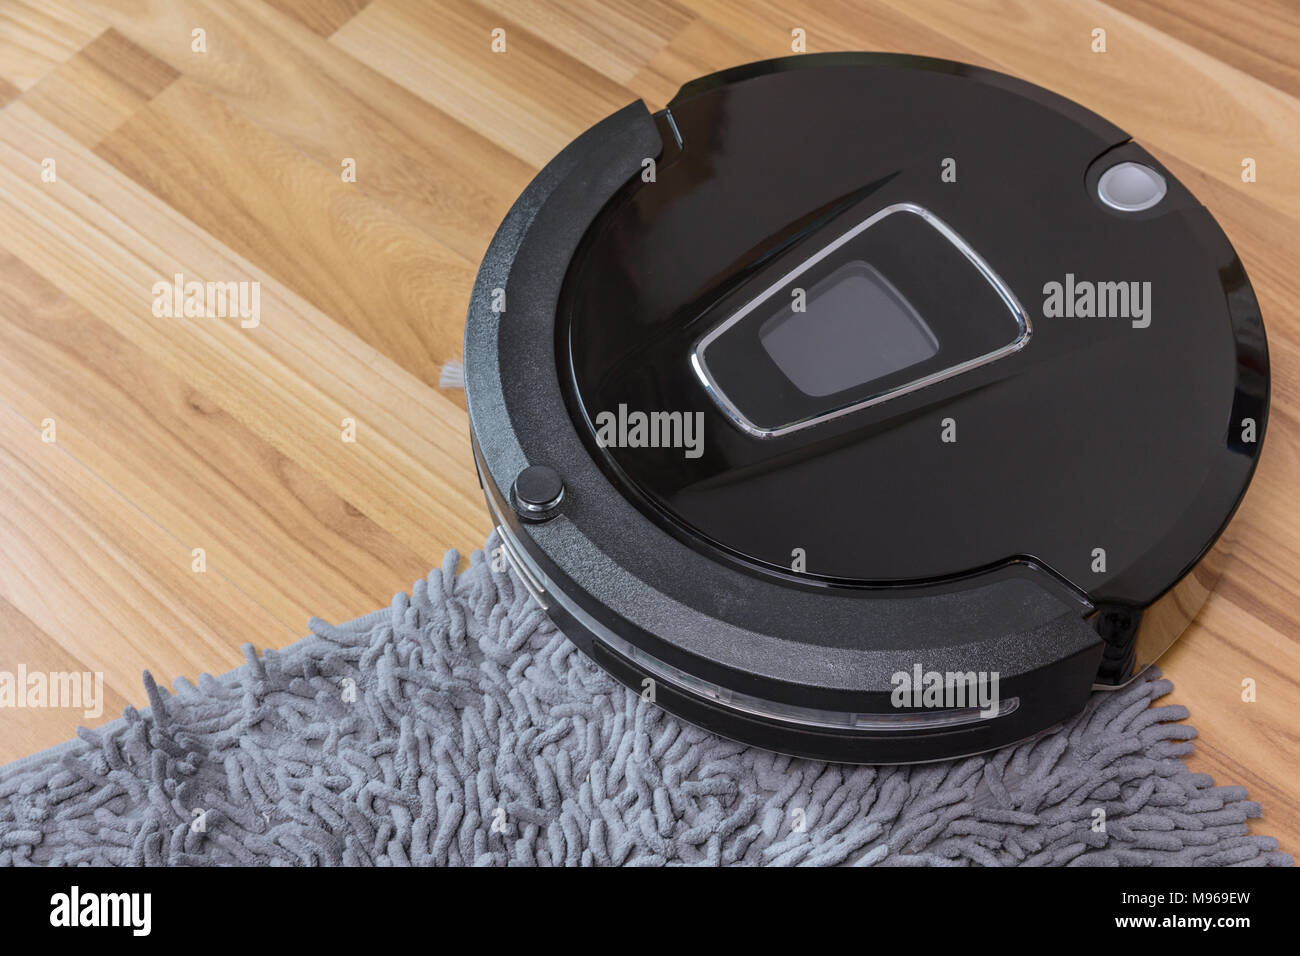 Robot aspirapolvere sul laminato pavimento in legno con pulizia moquette  Foto stock - Alamy